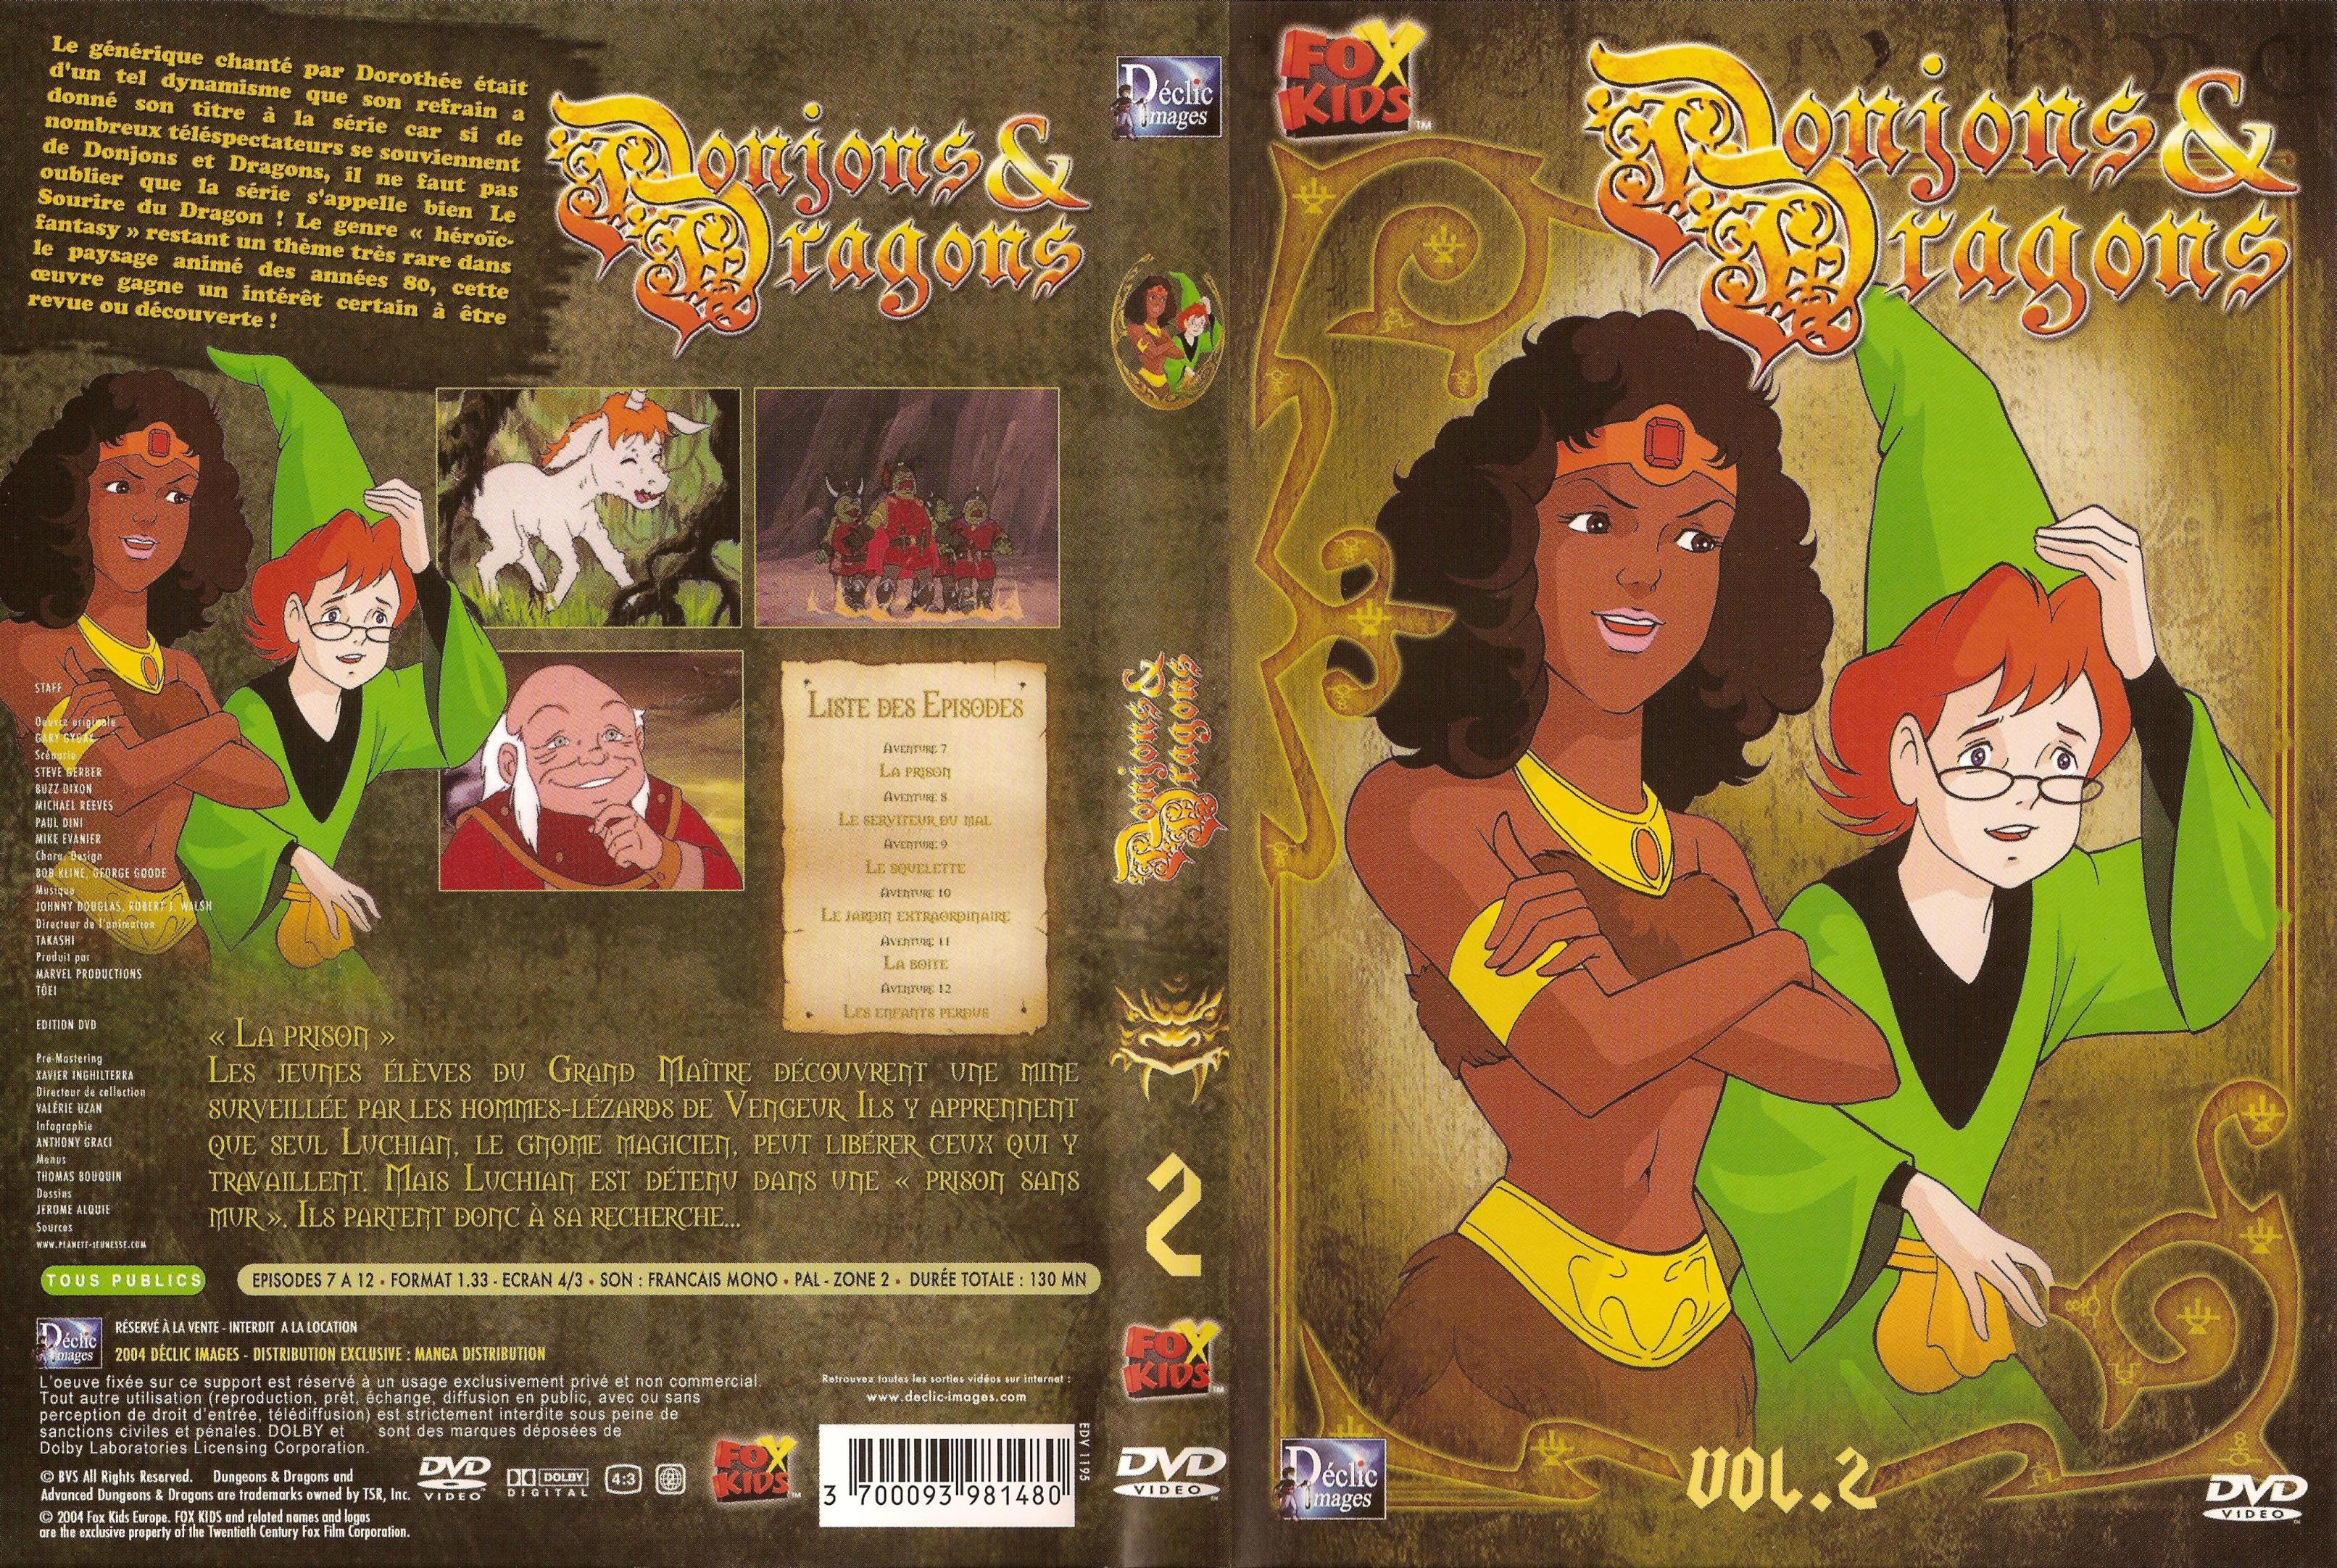 Jaquette DVD Donjons et dragons vol 2